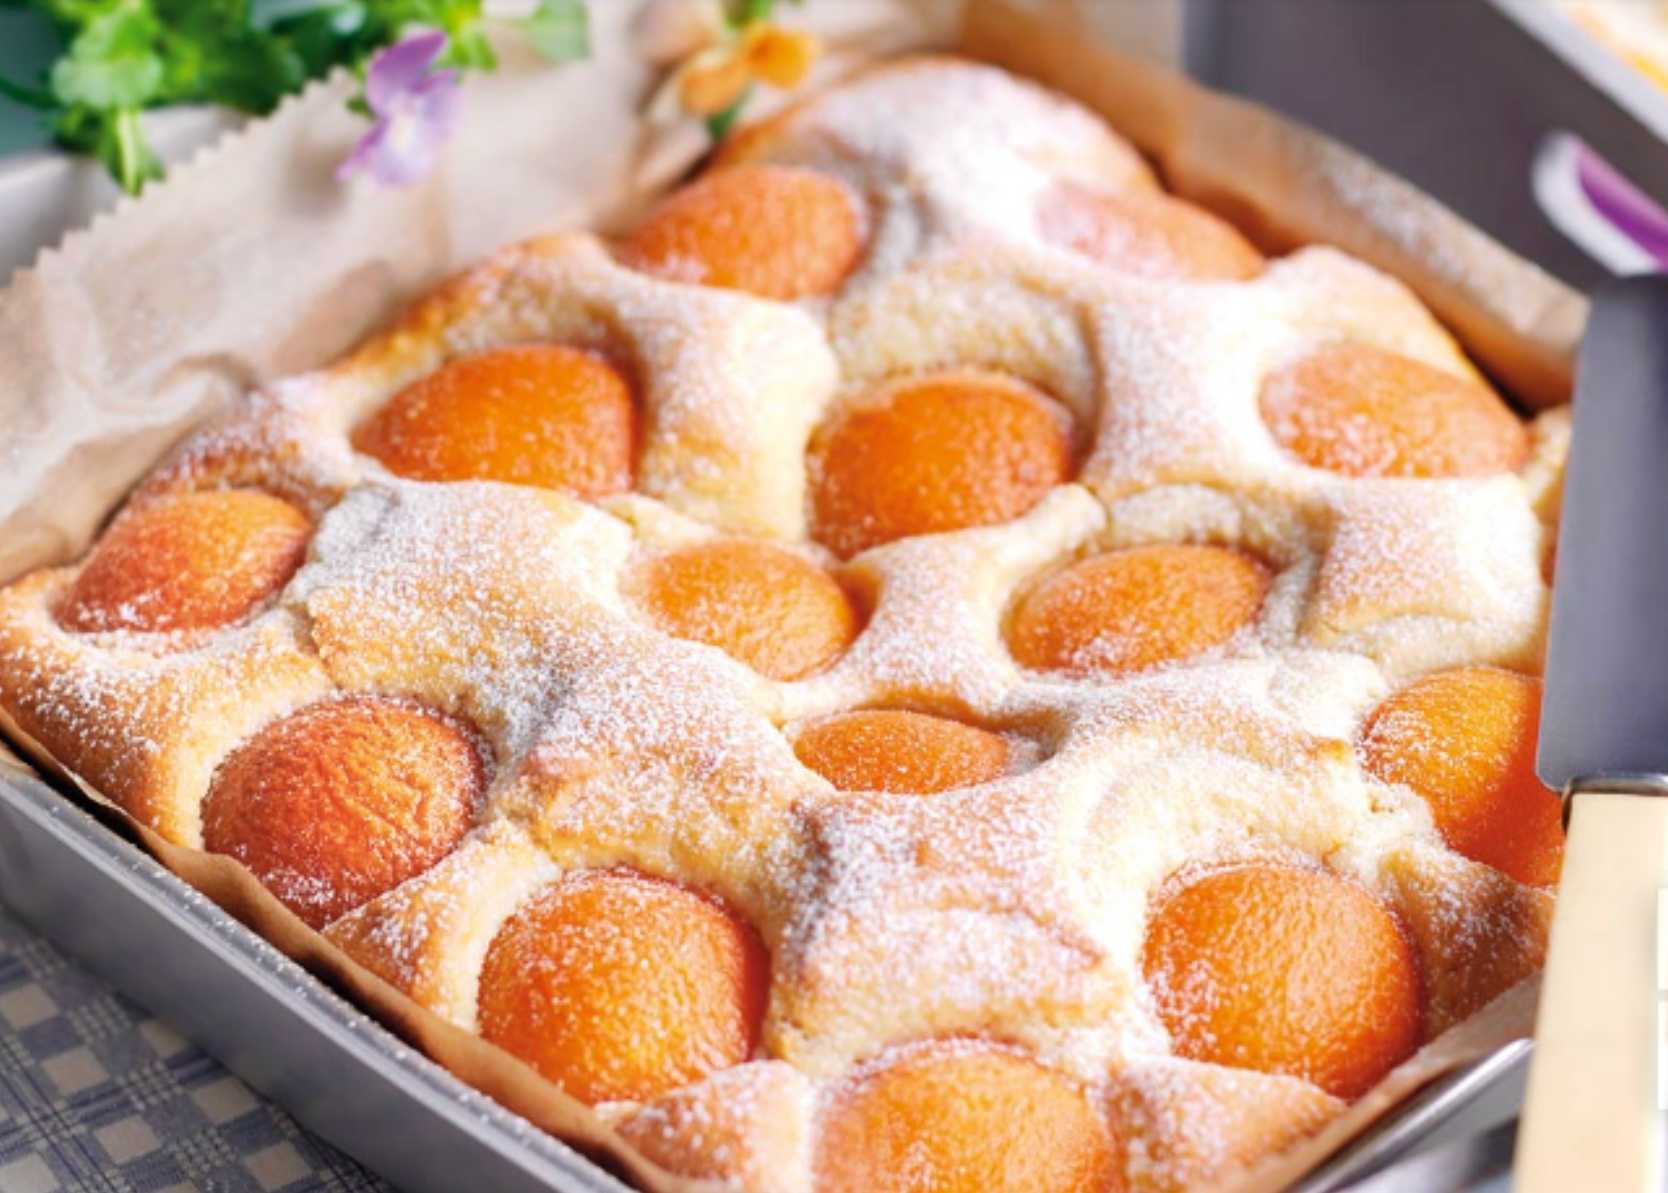 Рецепт ягодного пирога со сметанной заливкой с вишней,малиной,клубникой, абрикосами в домашних условиях с фото пошагово